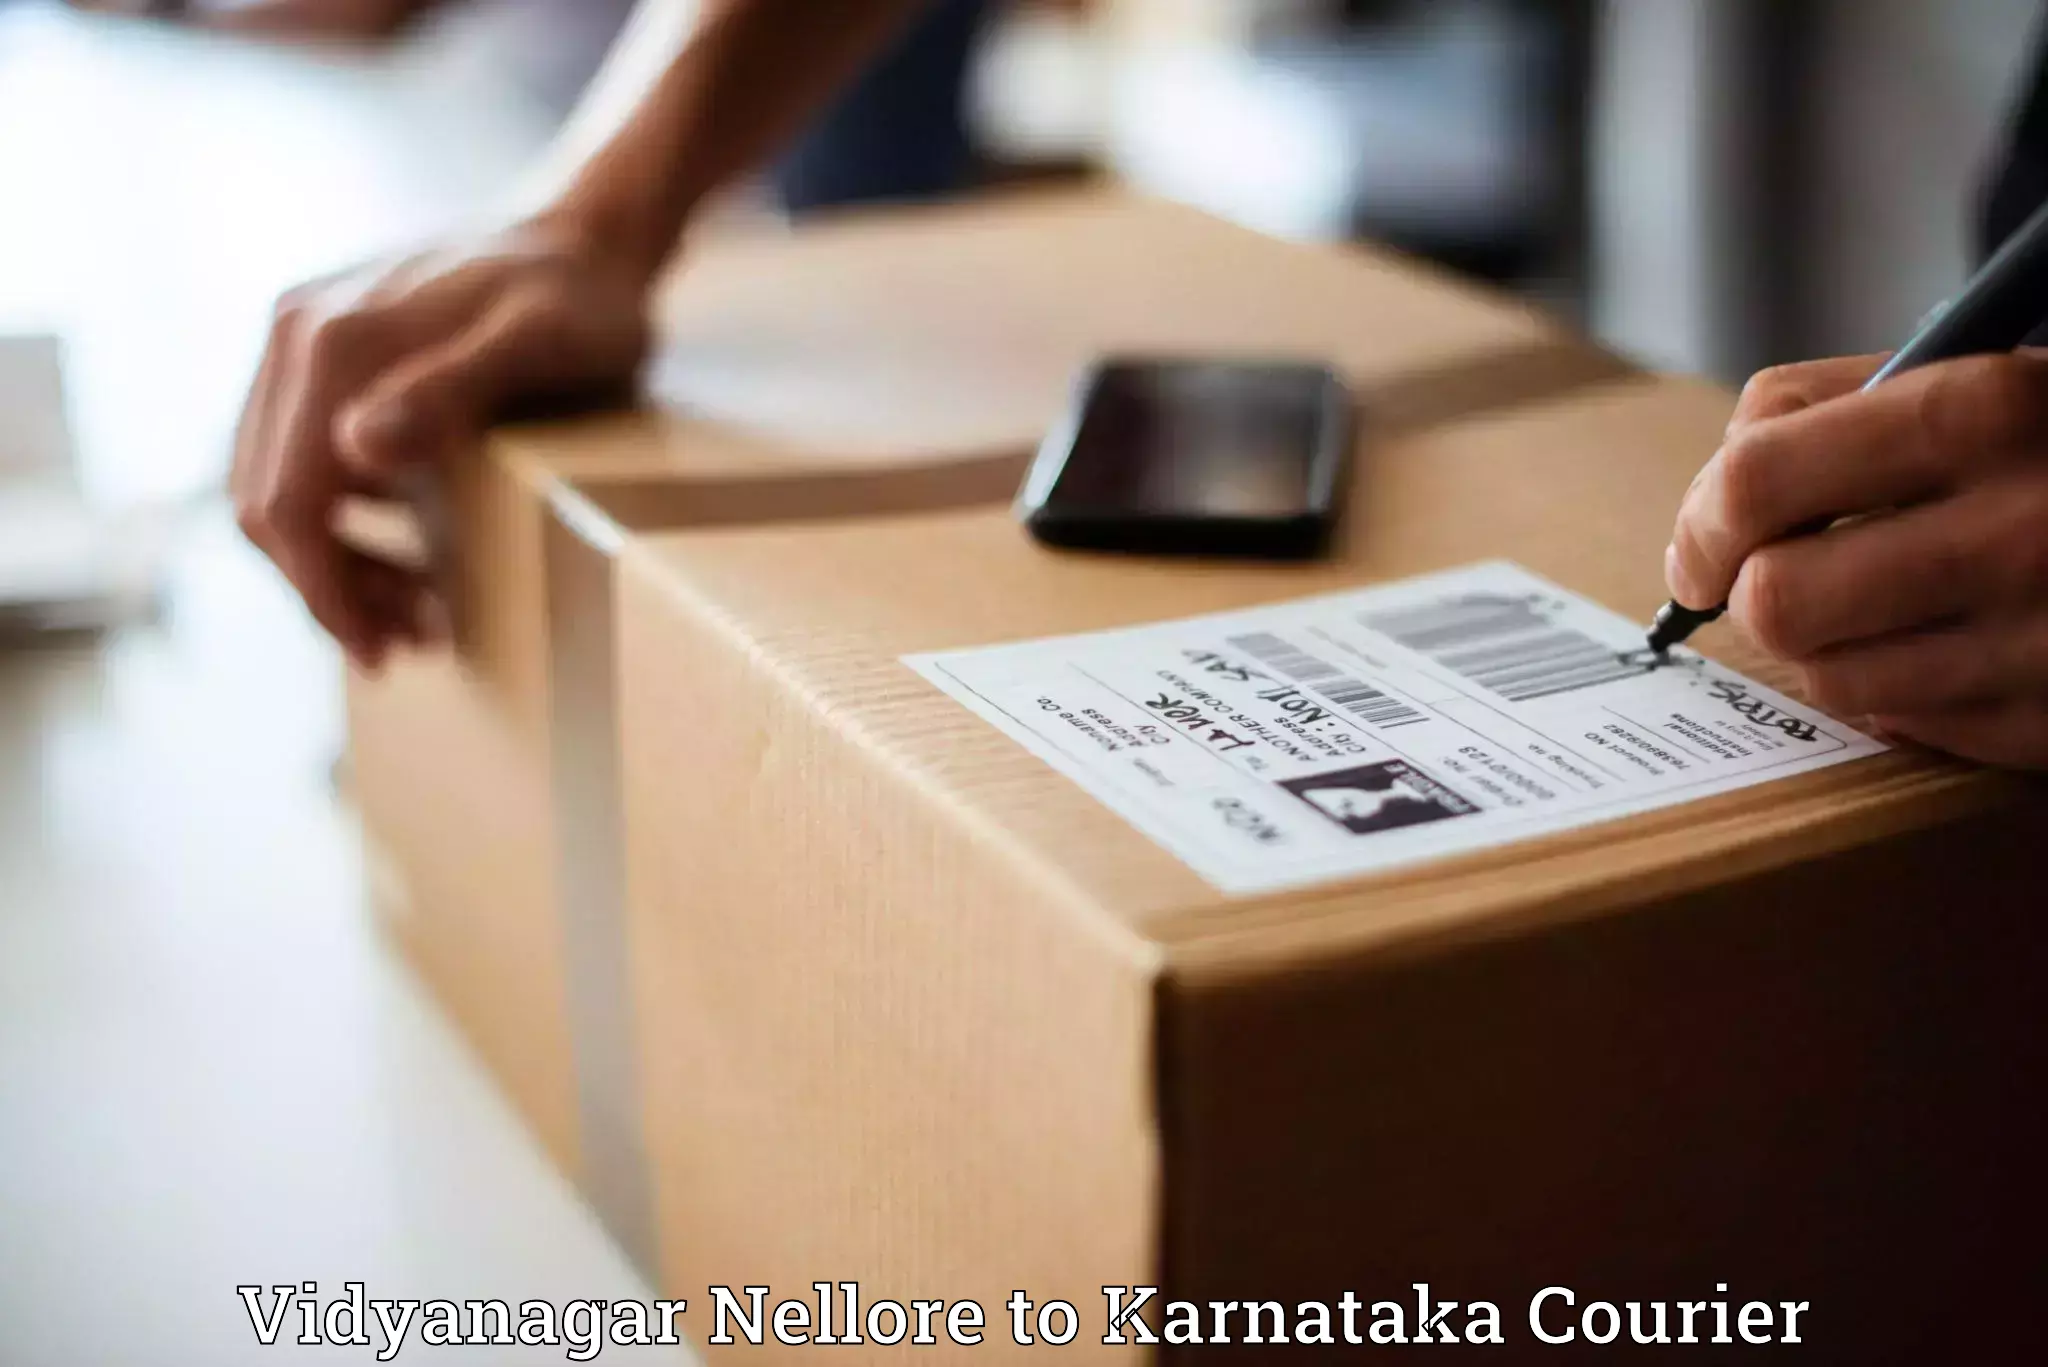 Local delivery service Vidyanagar Nellore to Molakalmuru